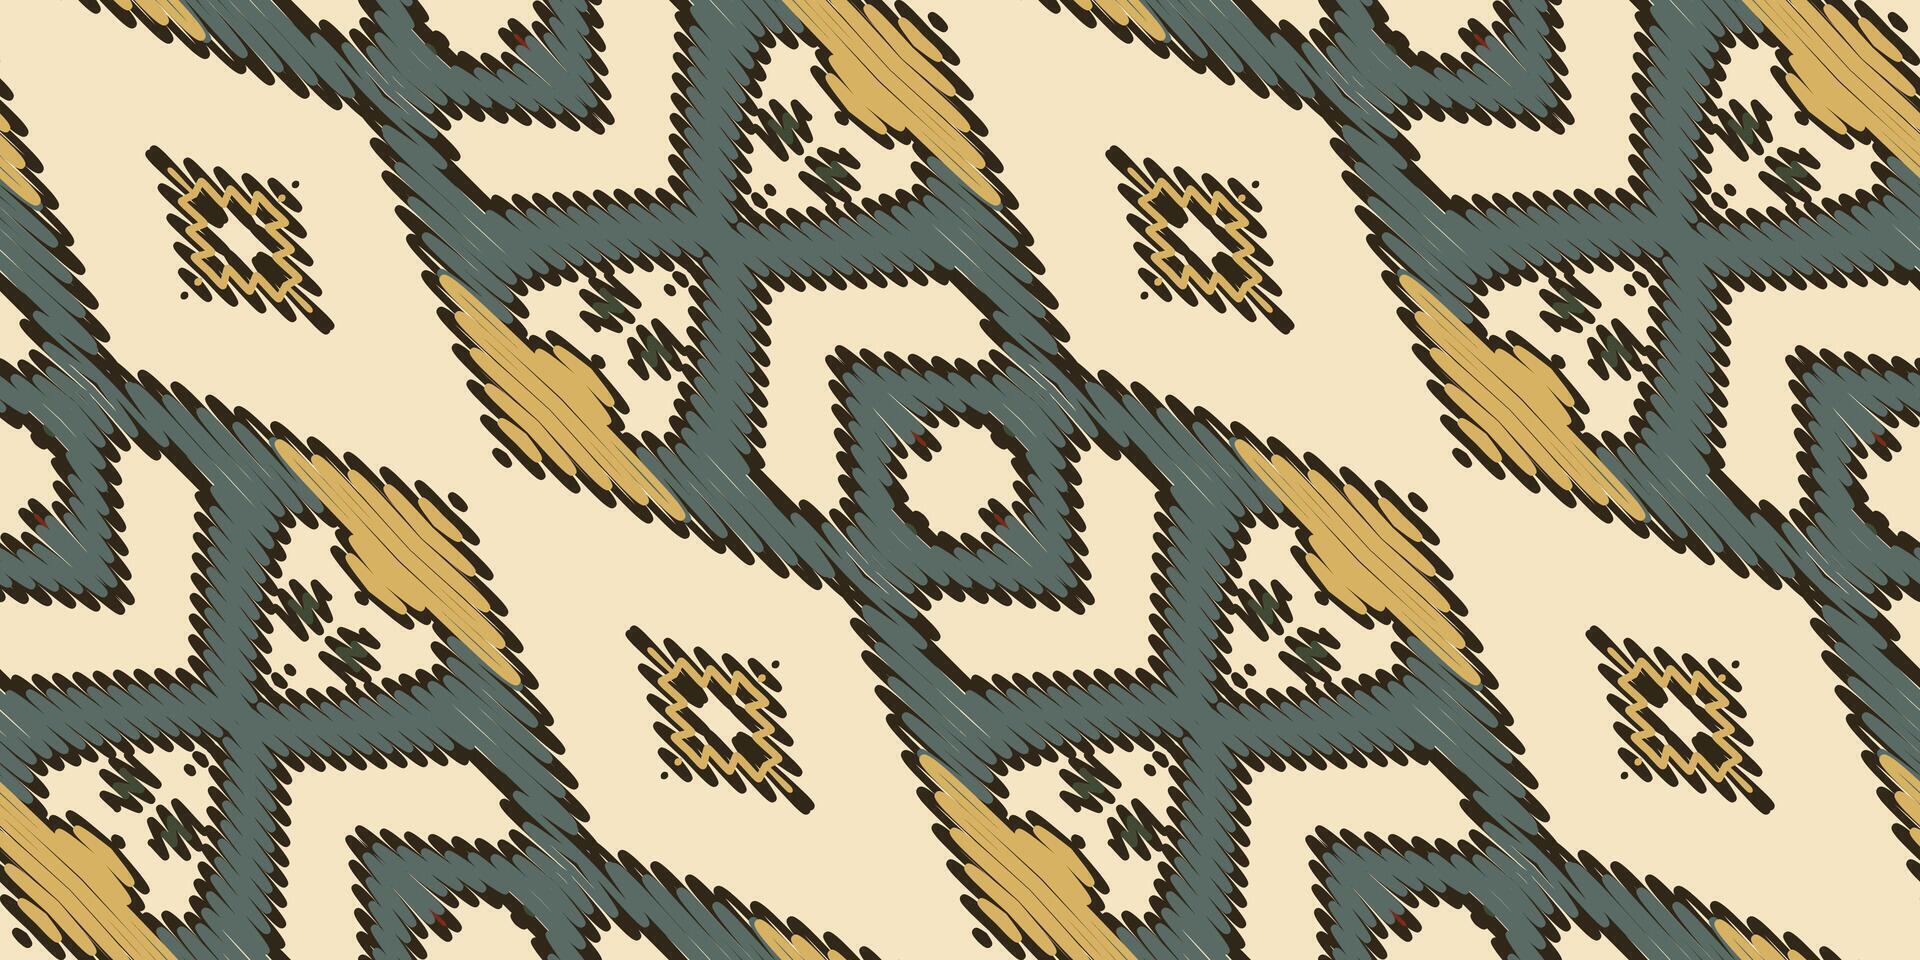 ikat bloemen paisley borduurwerk Aan wit achtergrond.ikat etnisch oosters patroon traditioneel.azteken stijl abstract vector illustratie.ontwerp voor textuur,stof,kleding,verpakking,decoratie,sjaal,tapijt